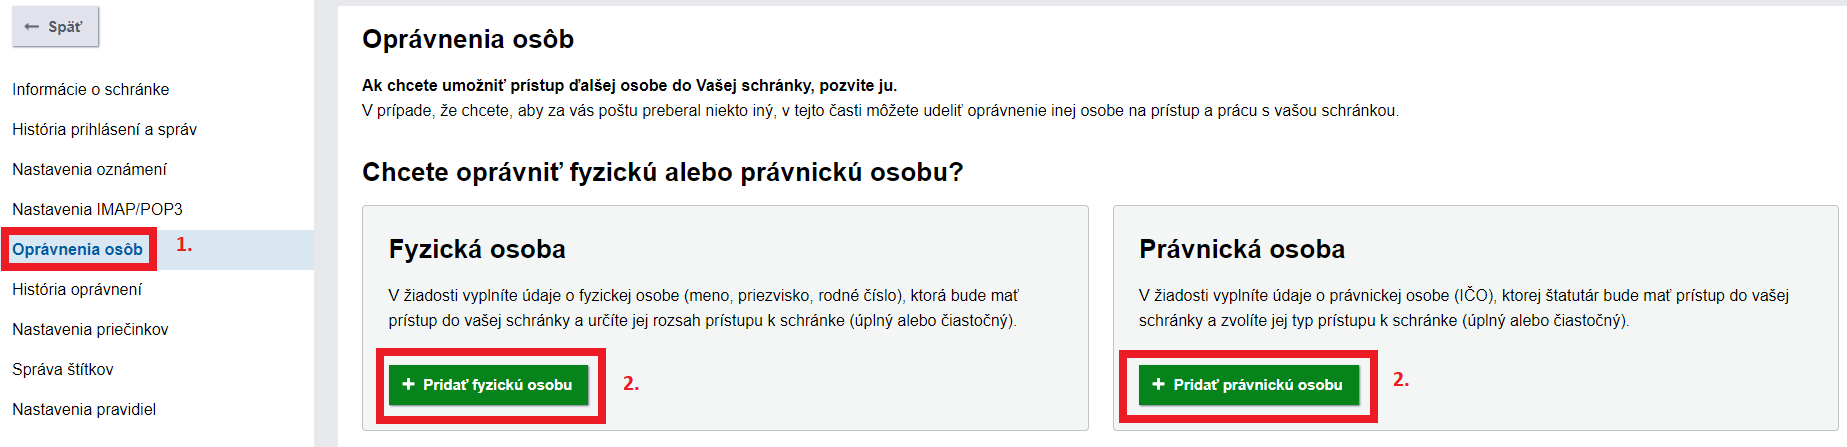 printscreen Slovensko.sk oprávnenia osôb